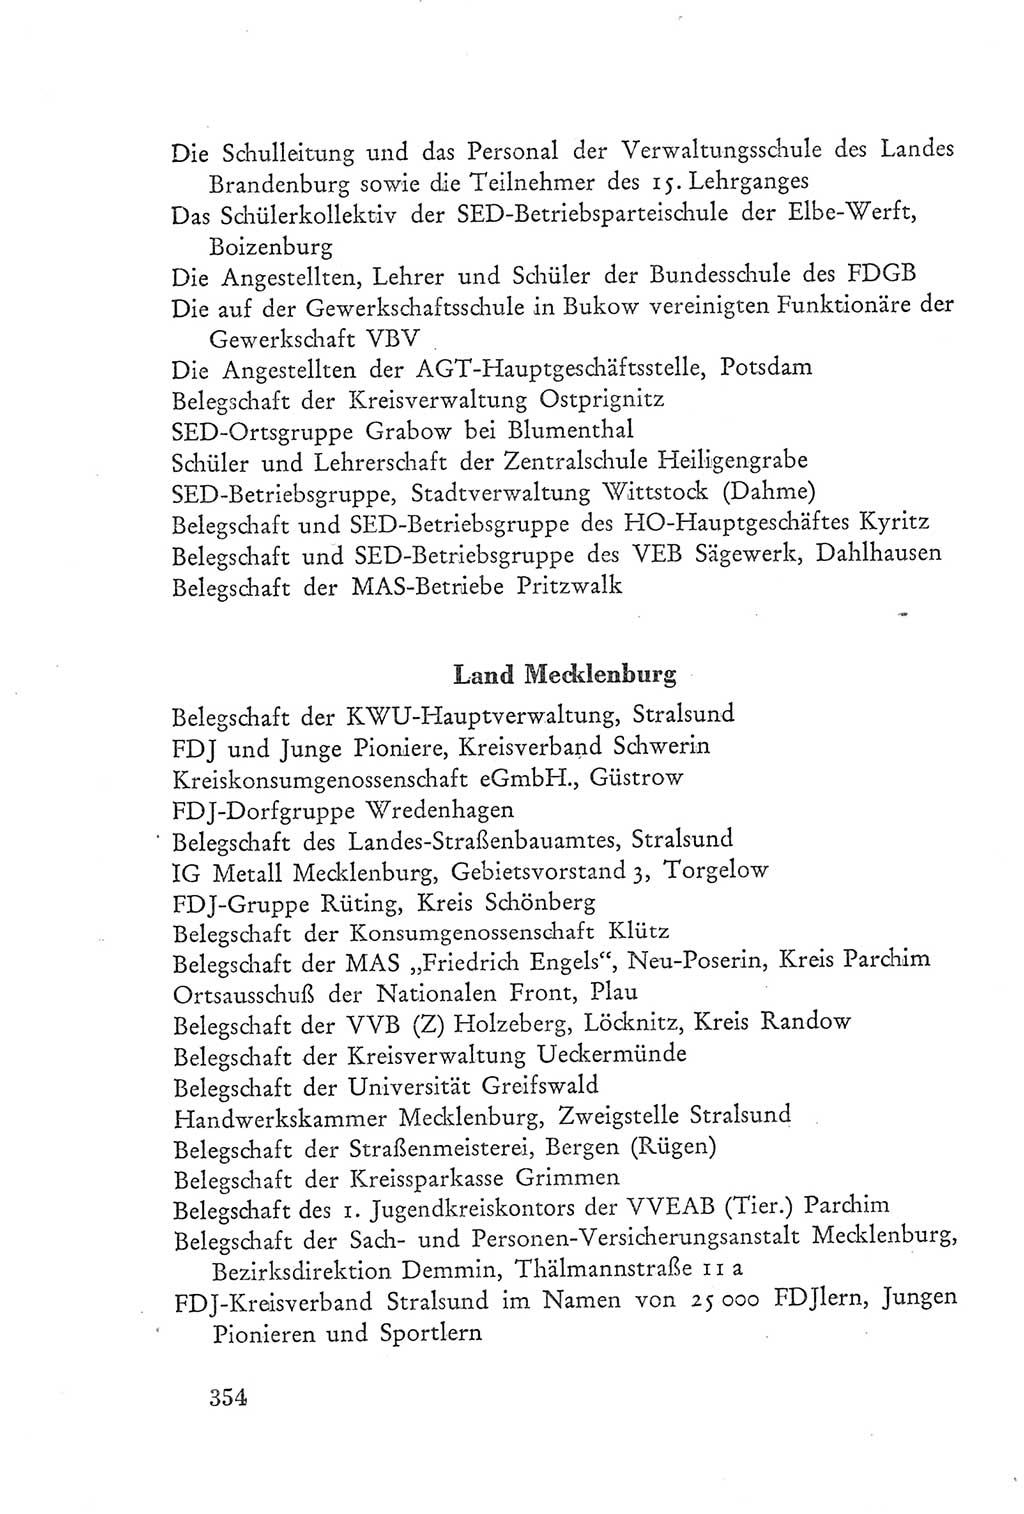 Protokoll der Verhandlungen des Ⅲ. Parteitages der Sozialistischen Einheitspartei Deutschlands (SED) [Deutsche Demokratische Republik (DDR)] 1950, Band 2, Seite 354 (Prot. Verh. Ⅲ. PT SED DDR 1950, Bd. 2, S. 354)